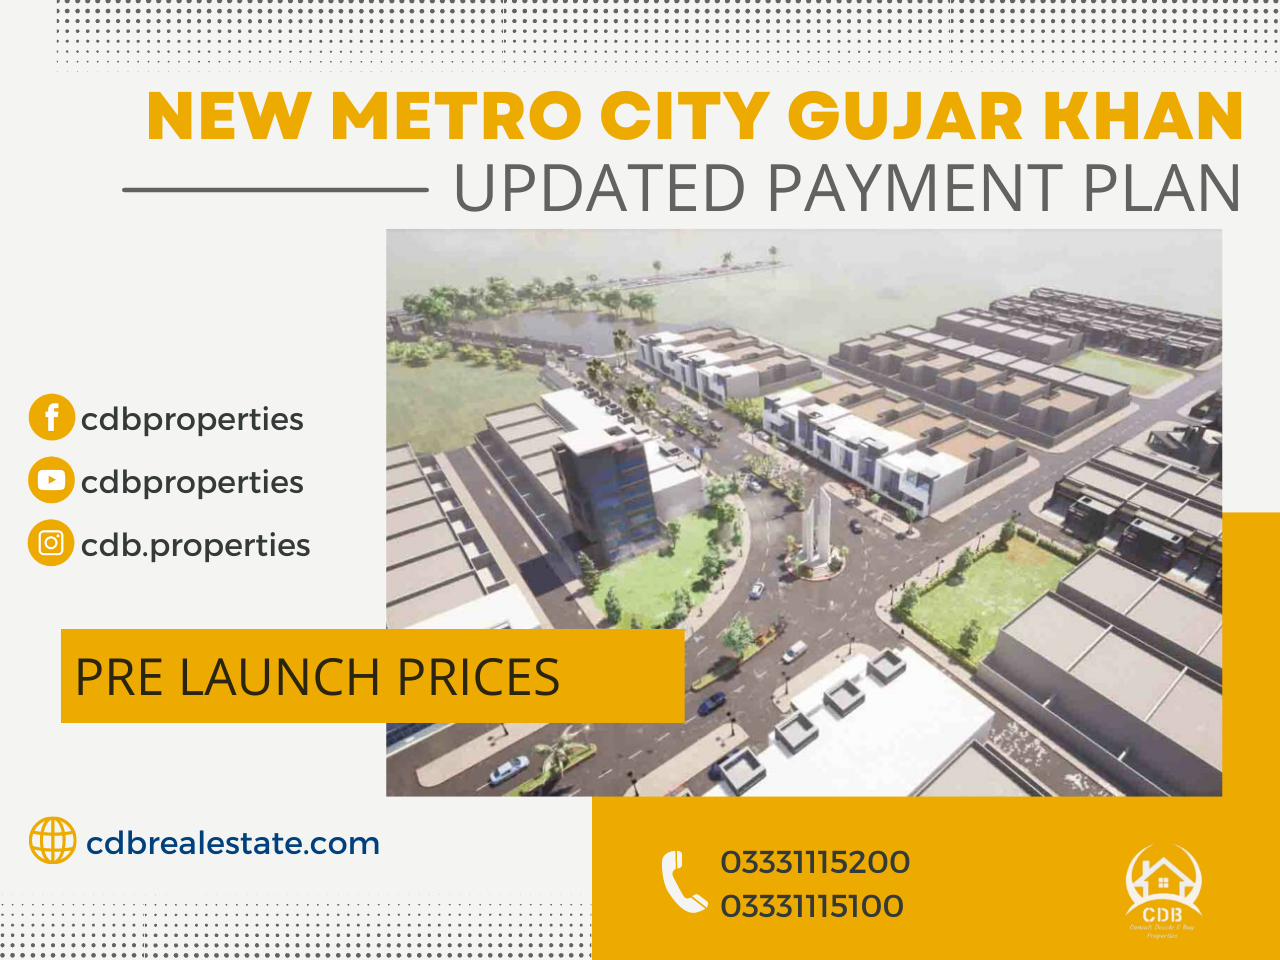 New Metro City Gujar Khan updated payment plan